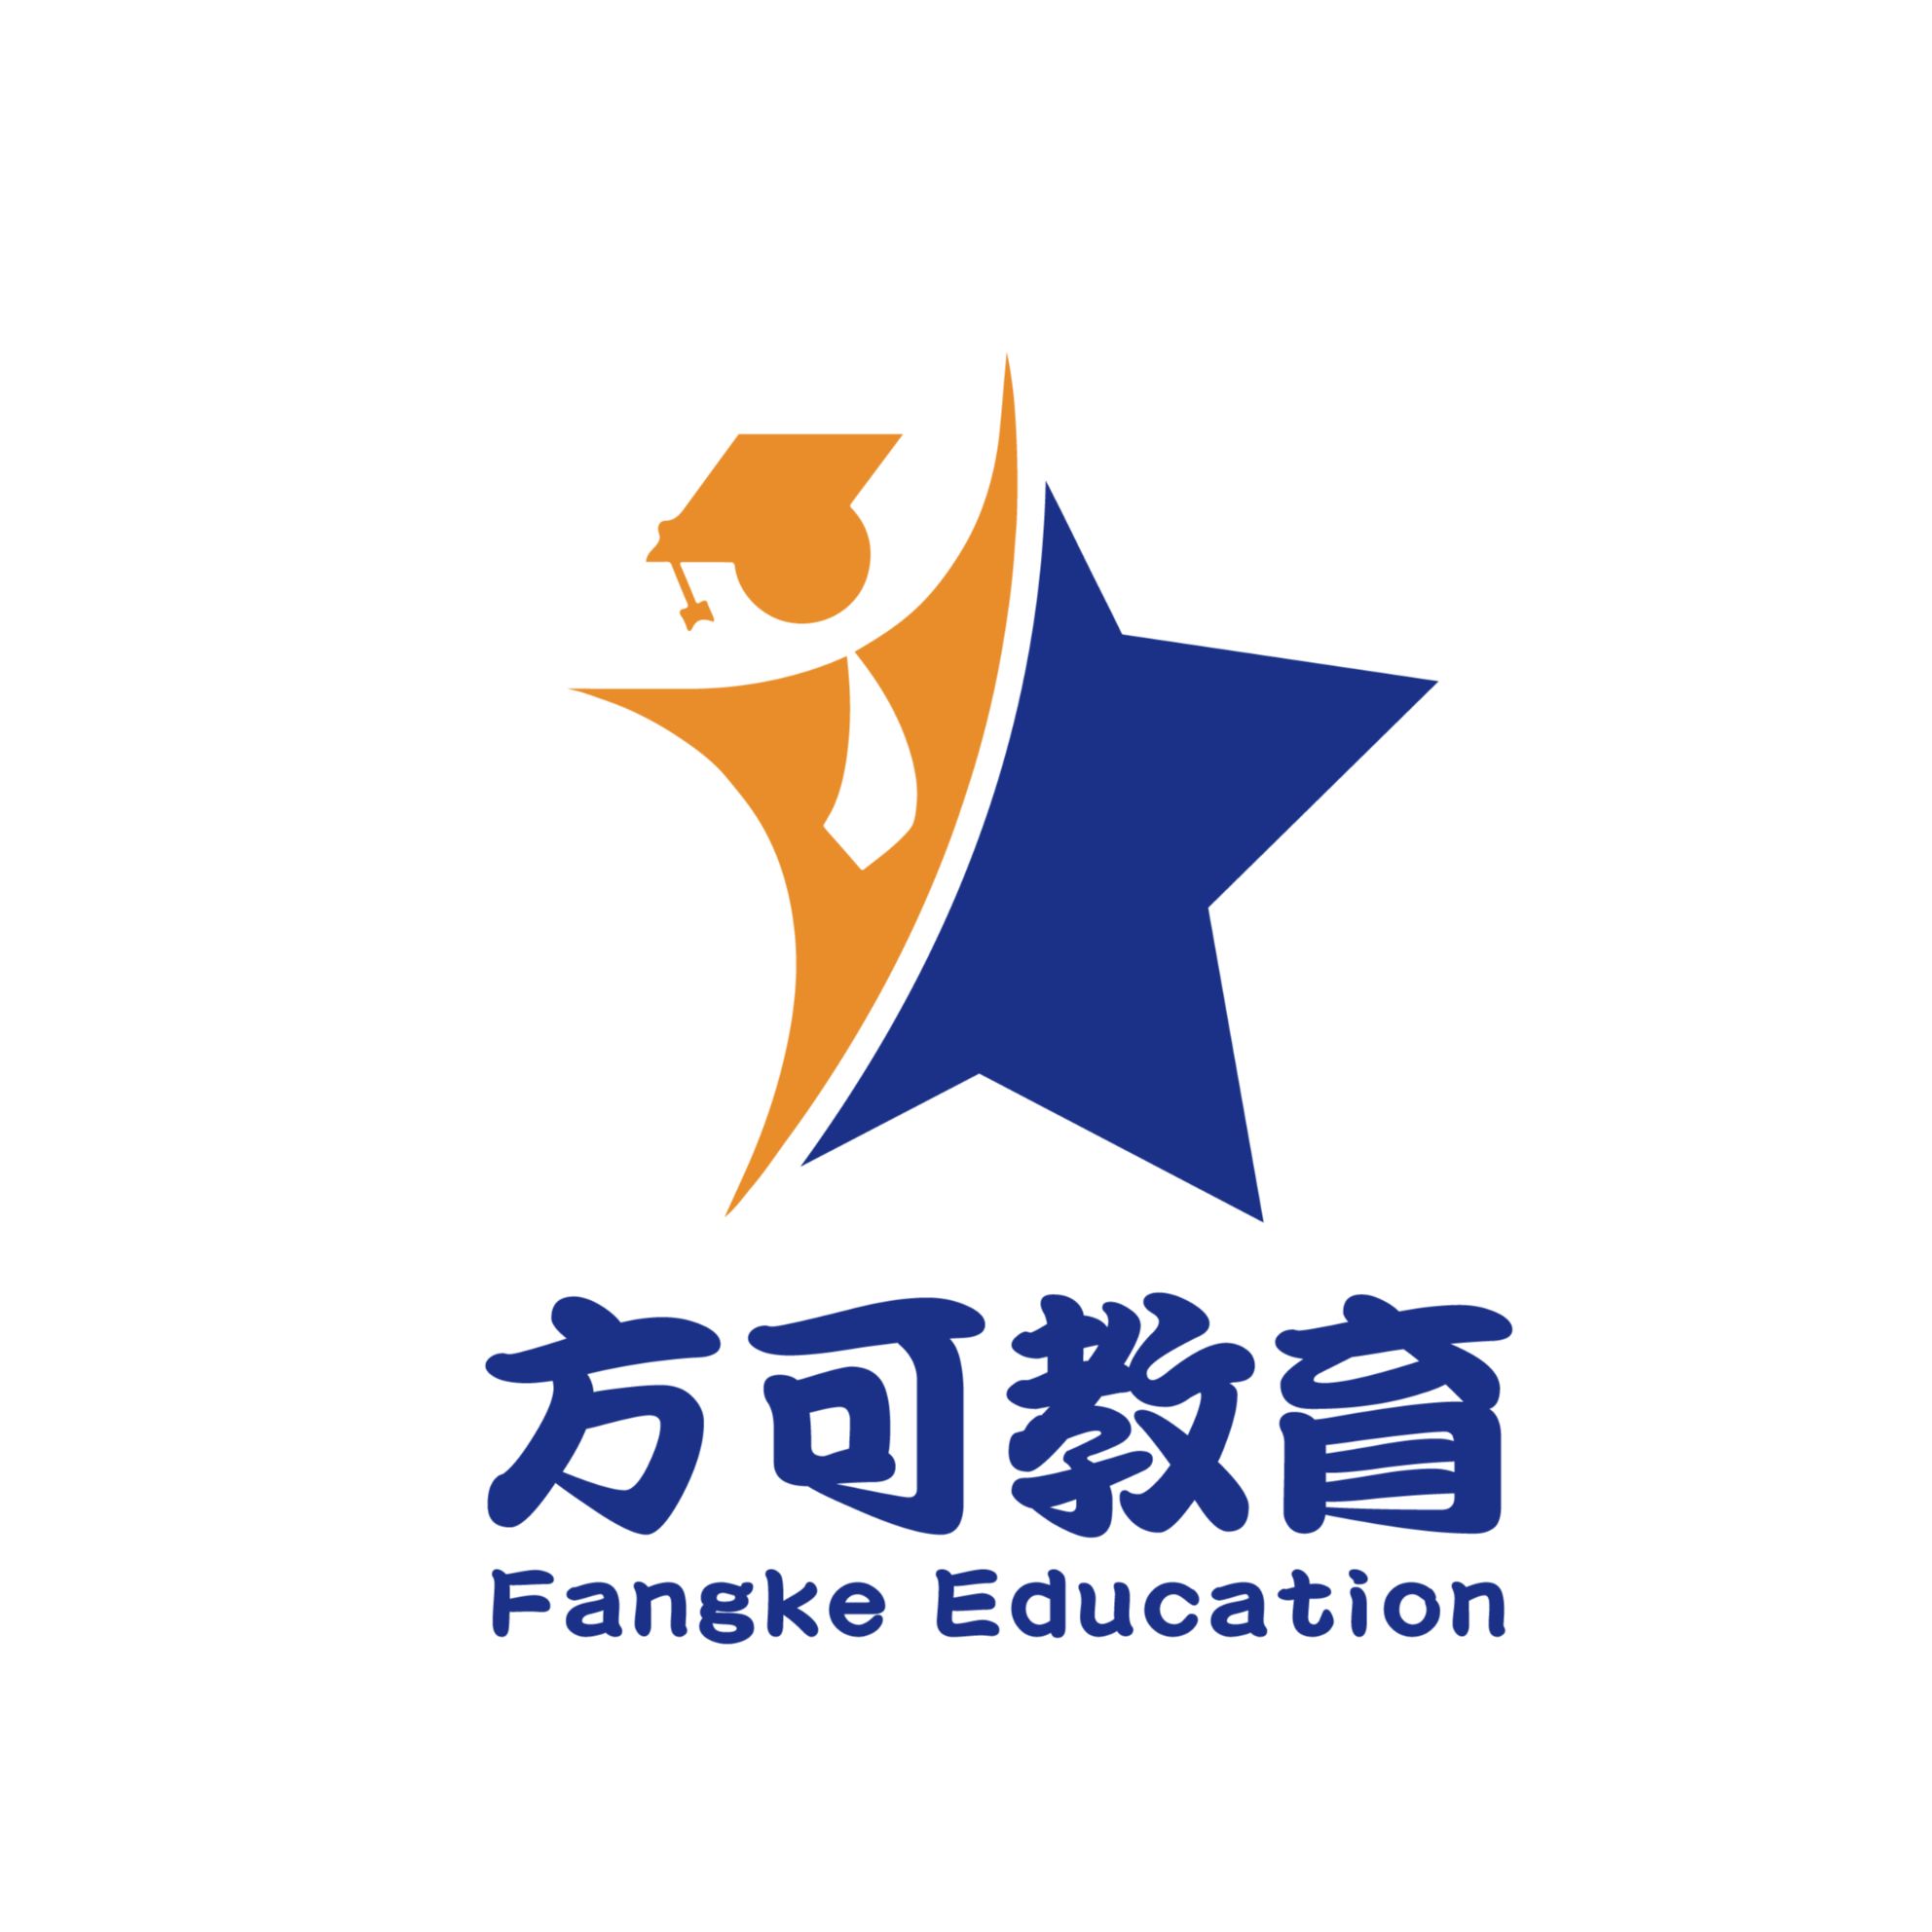 Fangke Education Logo